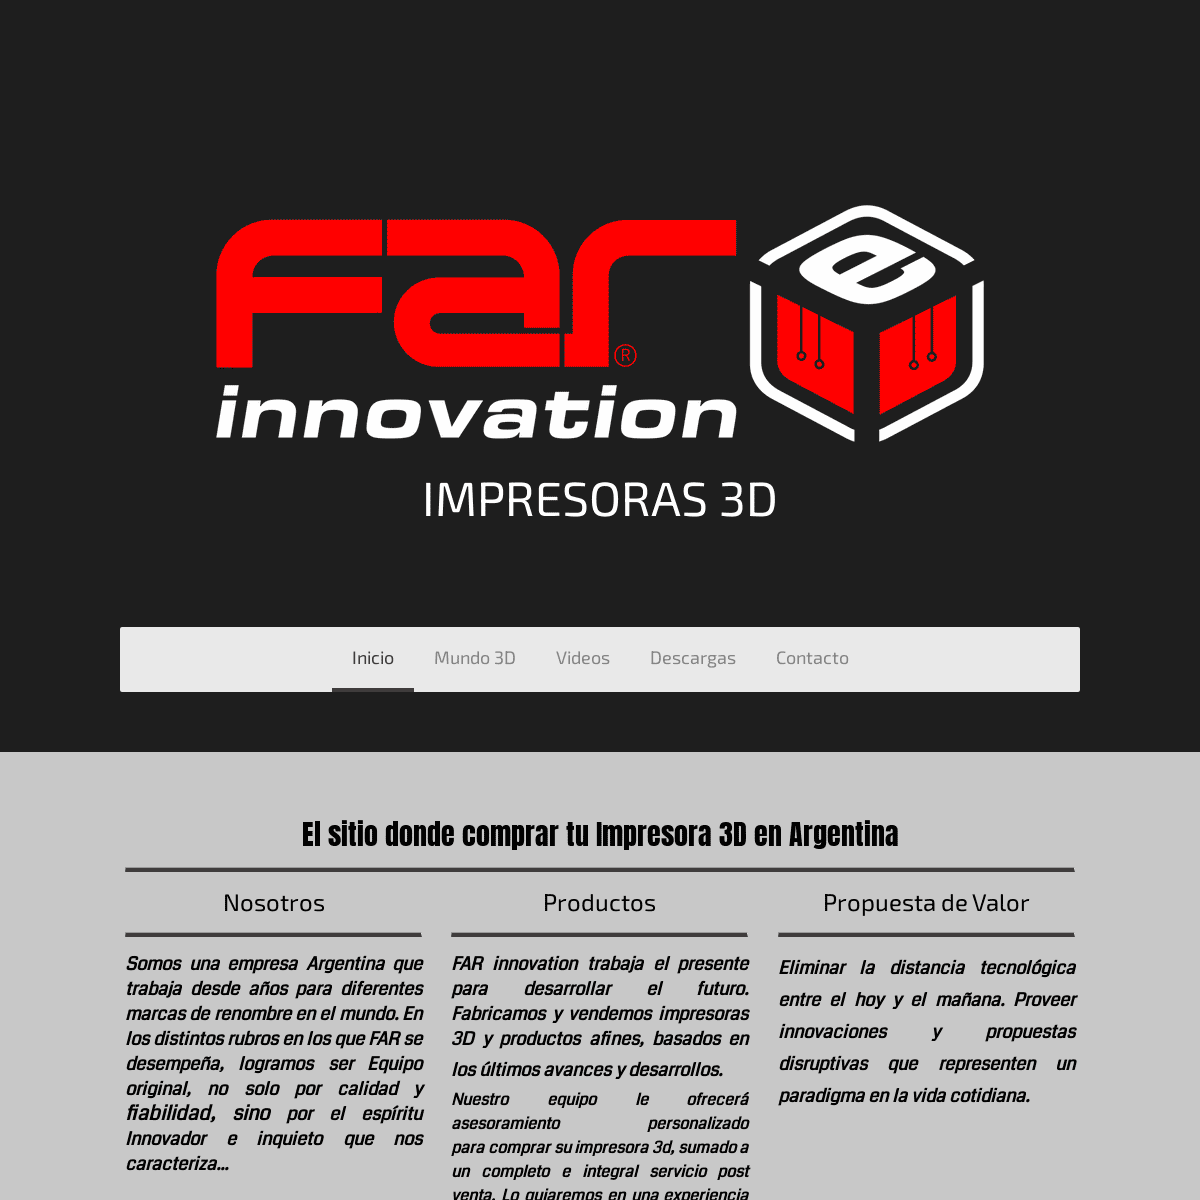 FAR - Impresoras 3D Argentina - FAR innovation - Impresoras 3D